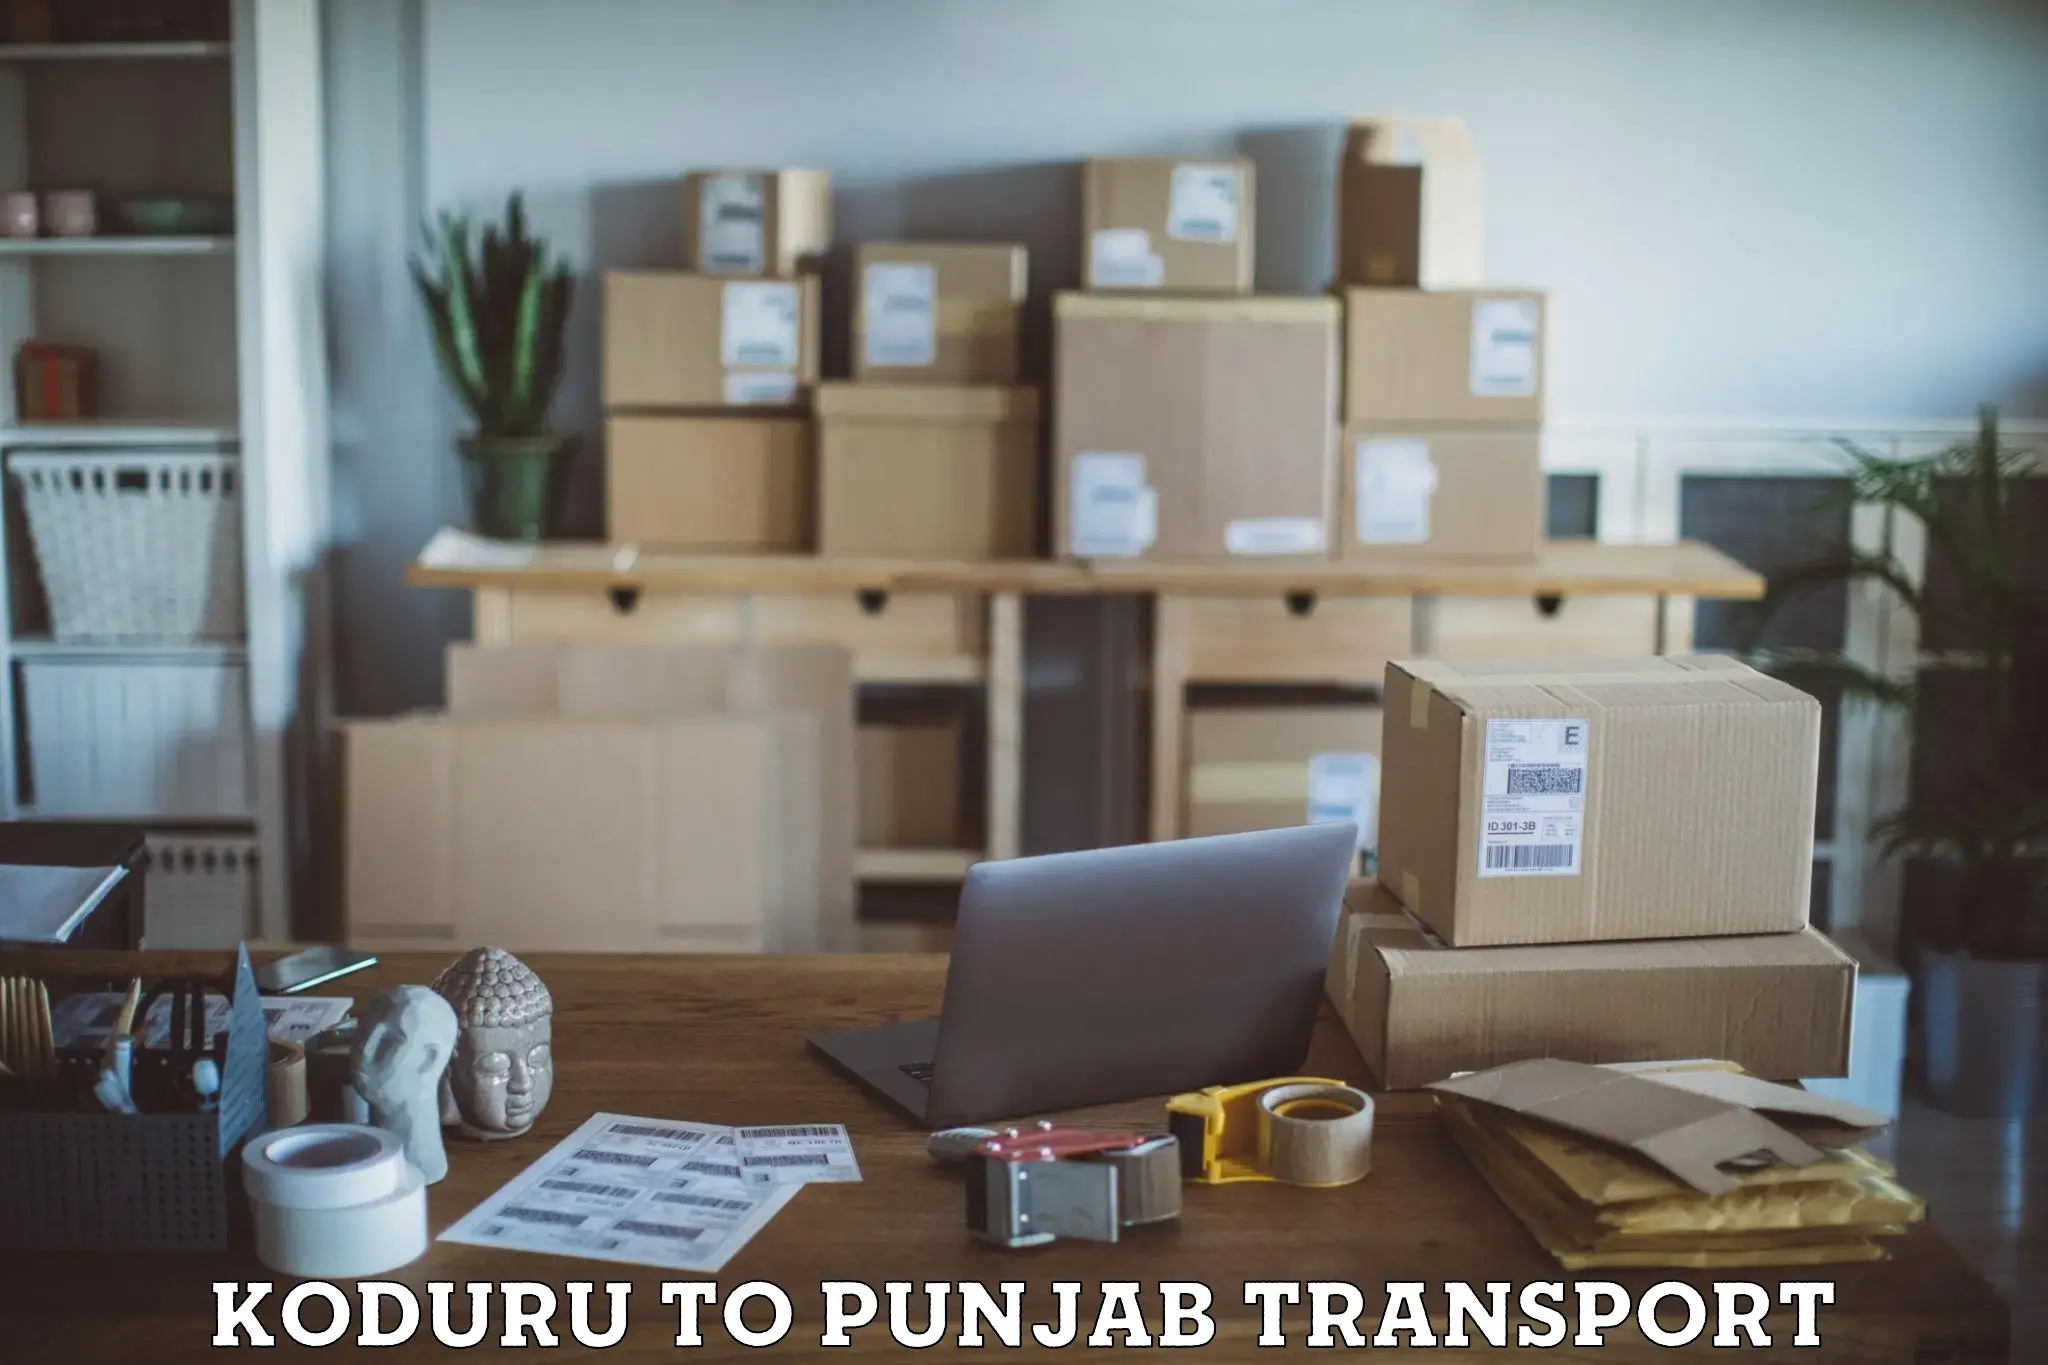 Transport services Koduru to Punjab